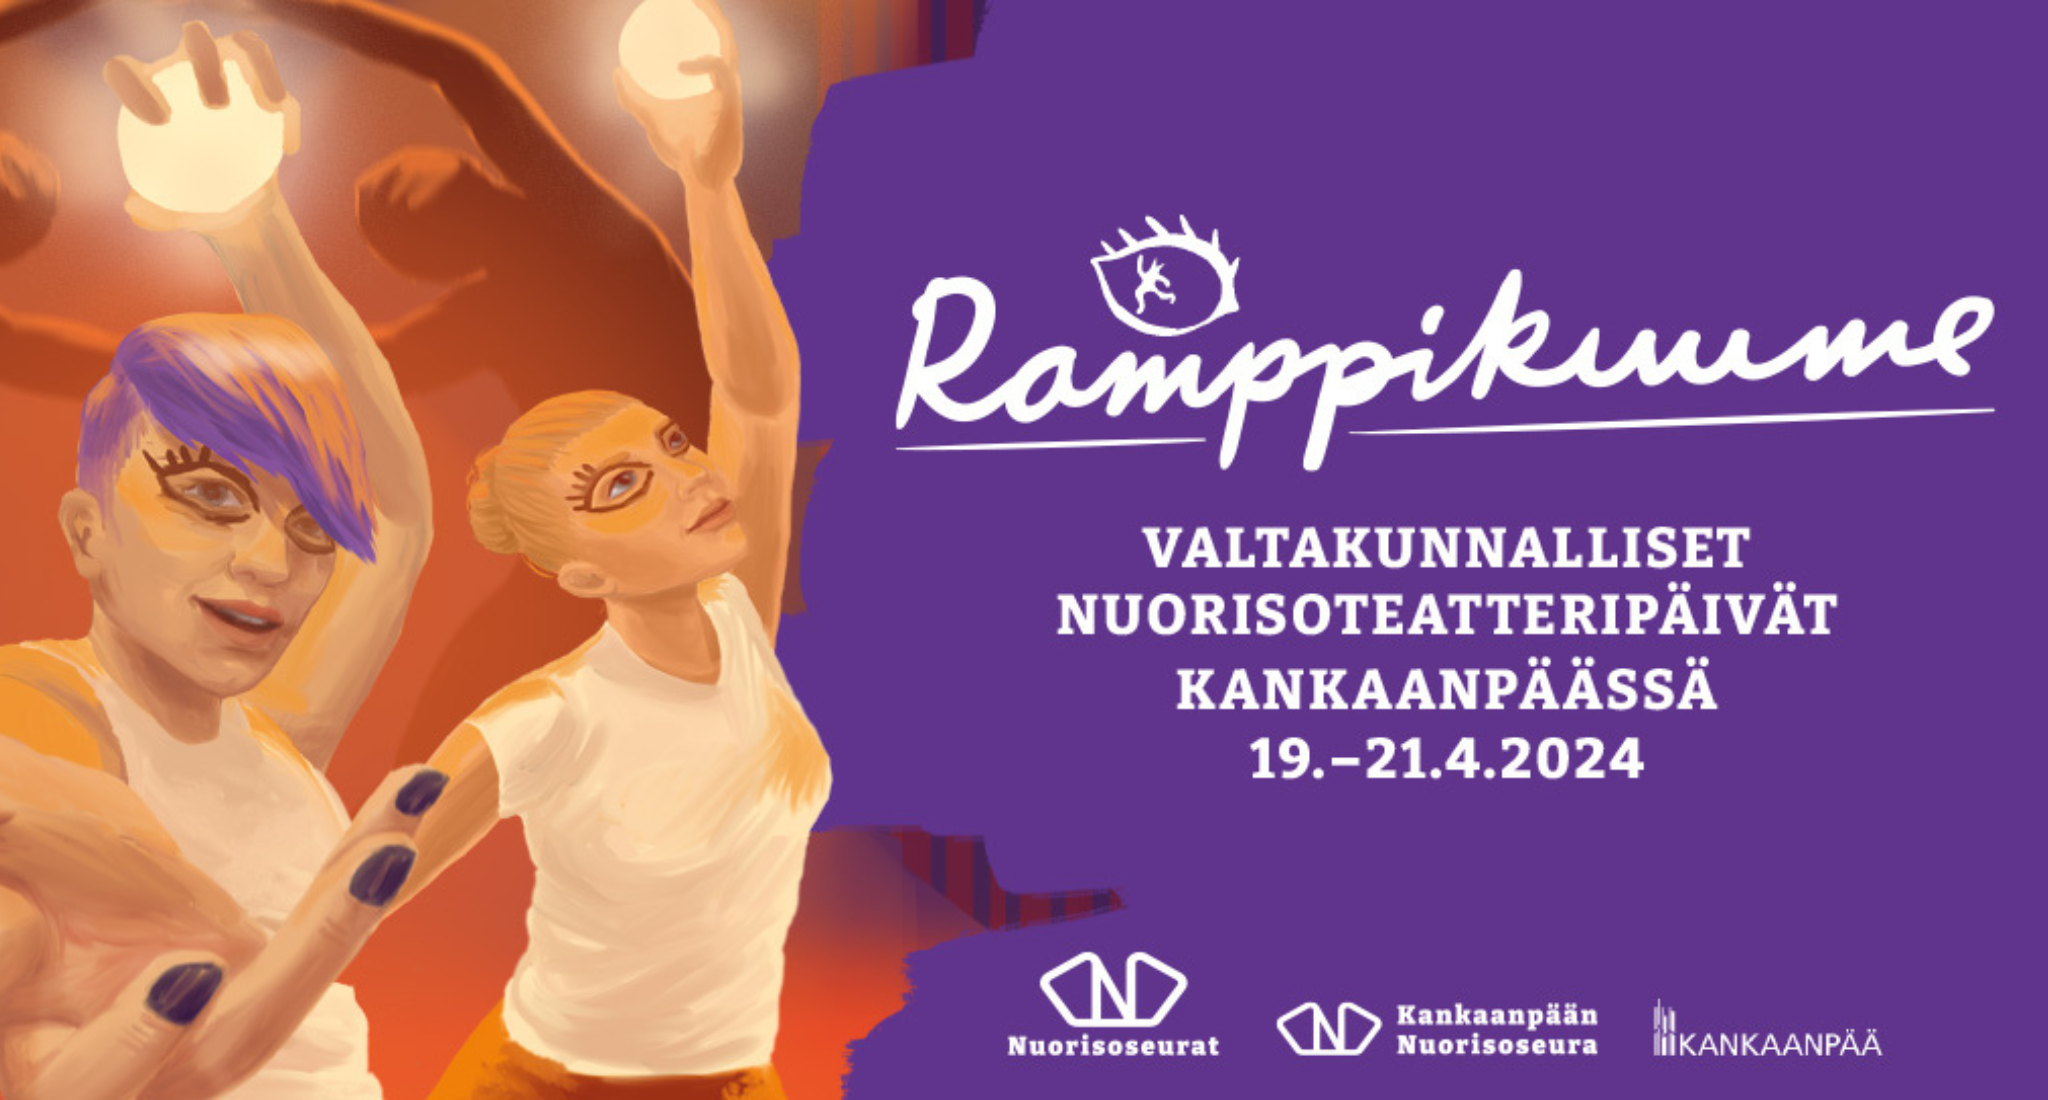 Ramppikuume valtakunnalliset teatteripäivät 19.-21.4.2024 Kankaanpäässä.